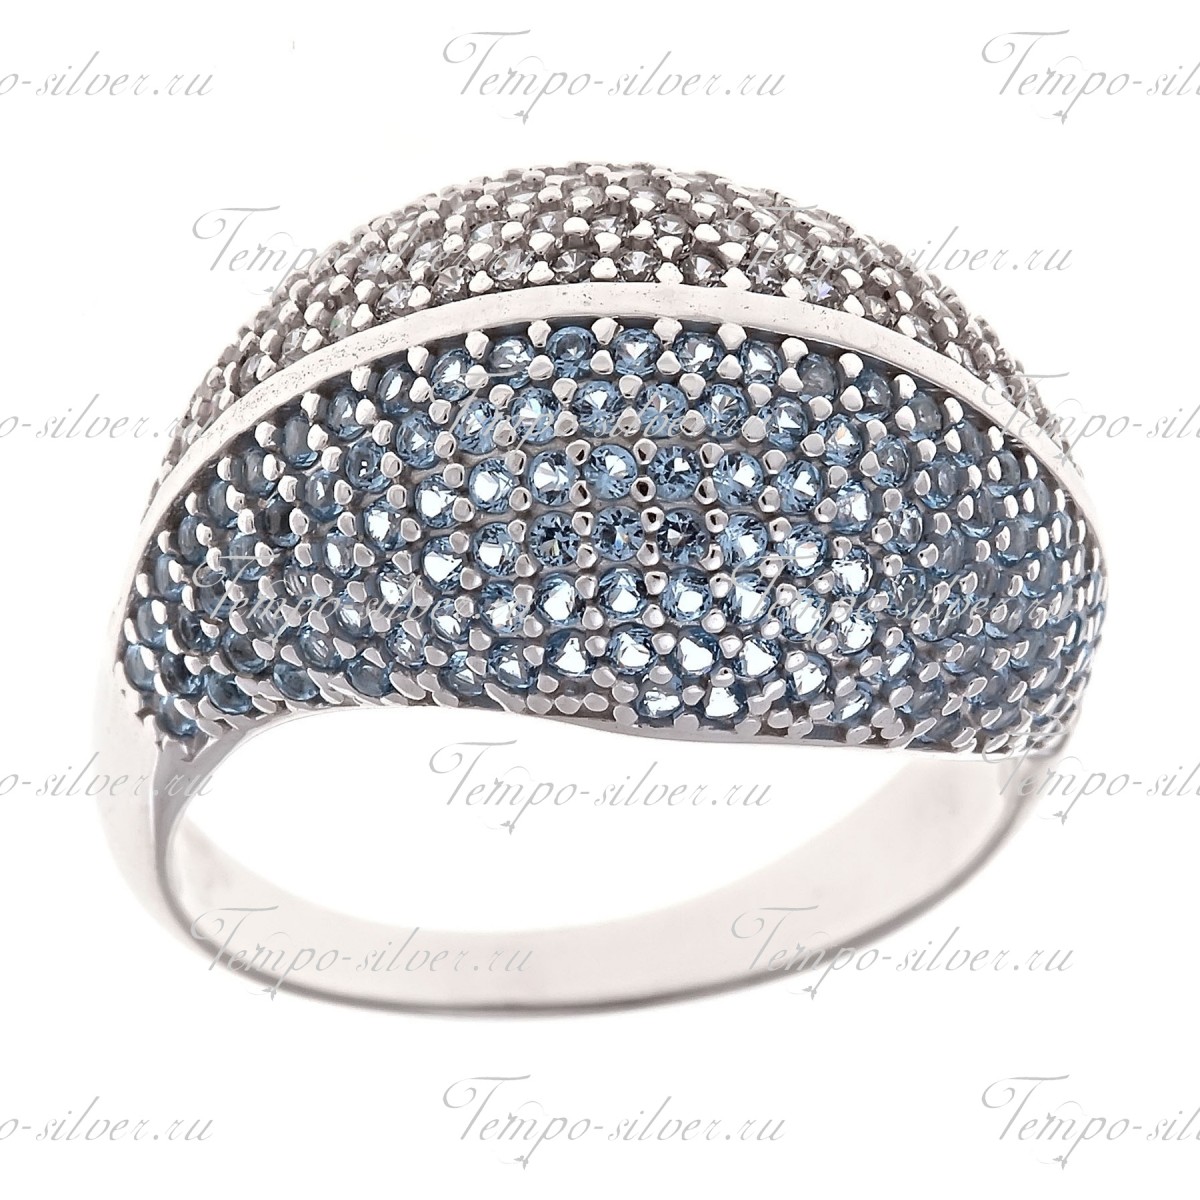 Кольцо из серебра выпуклой формы с половинками из белых и голубых камней